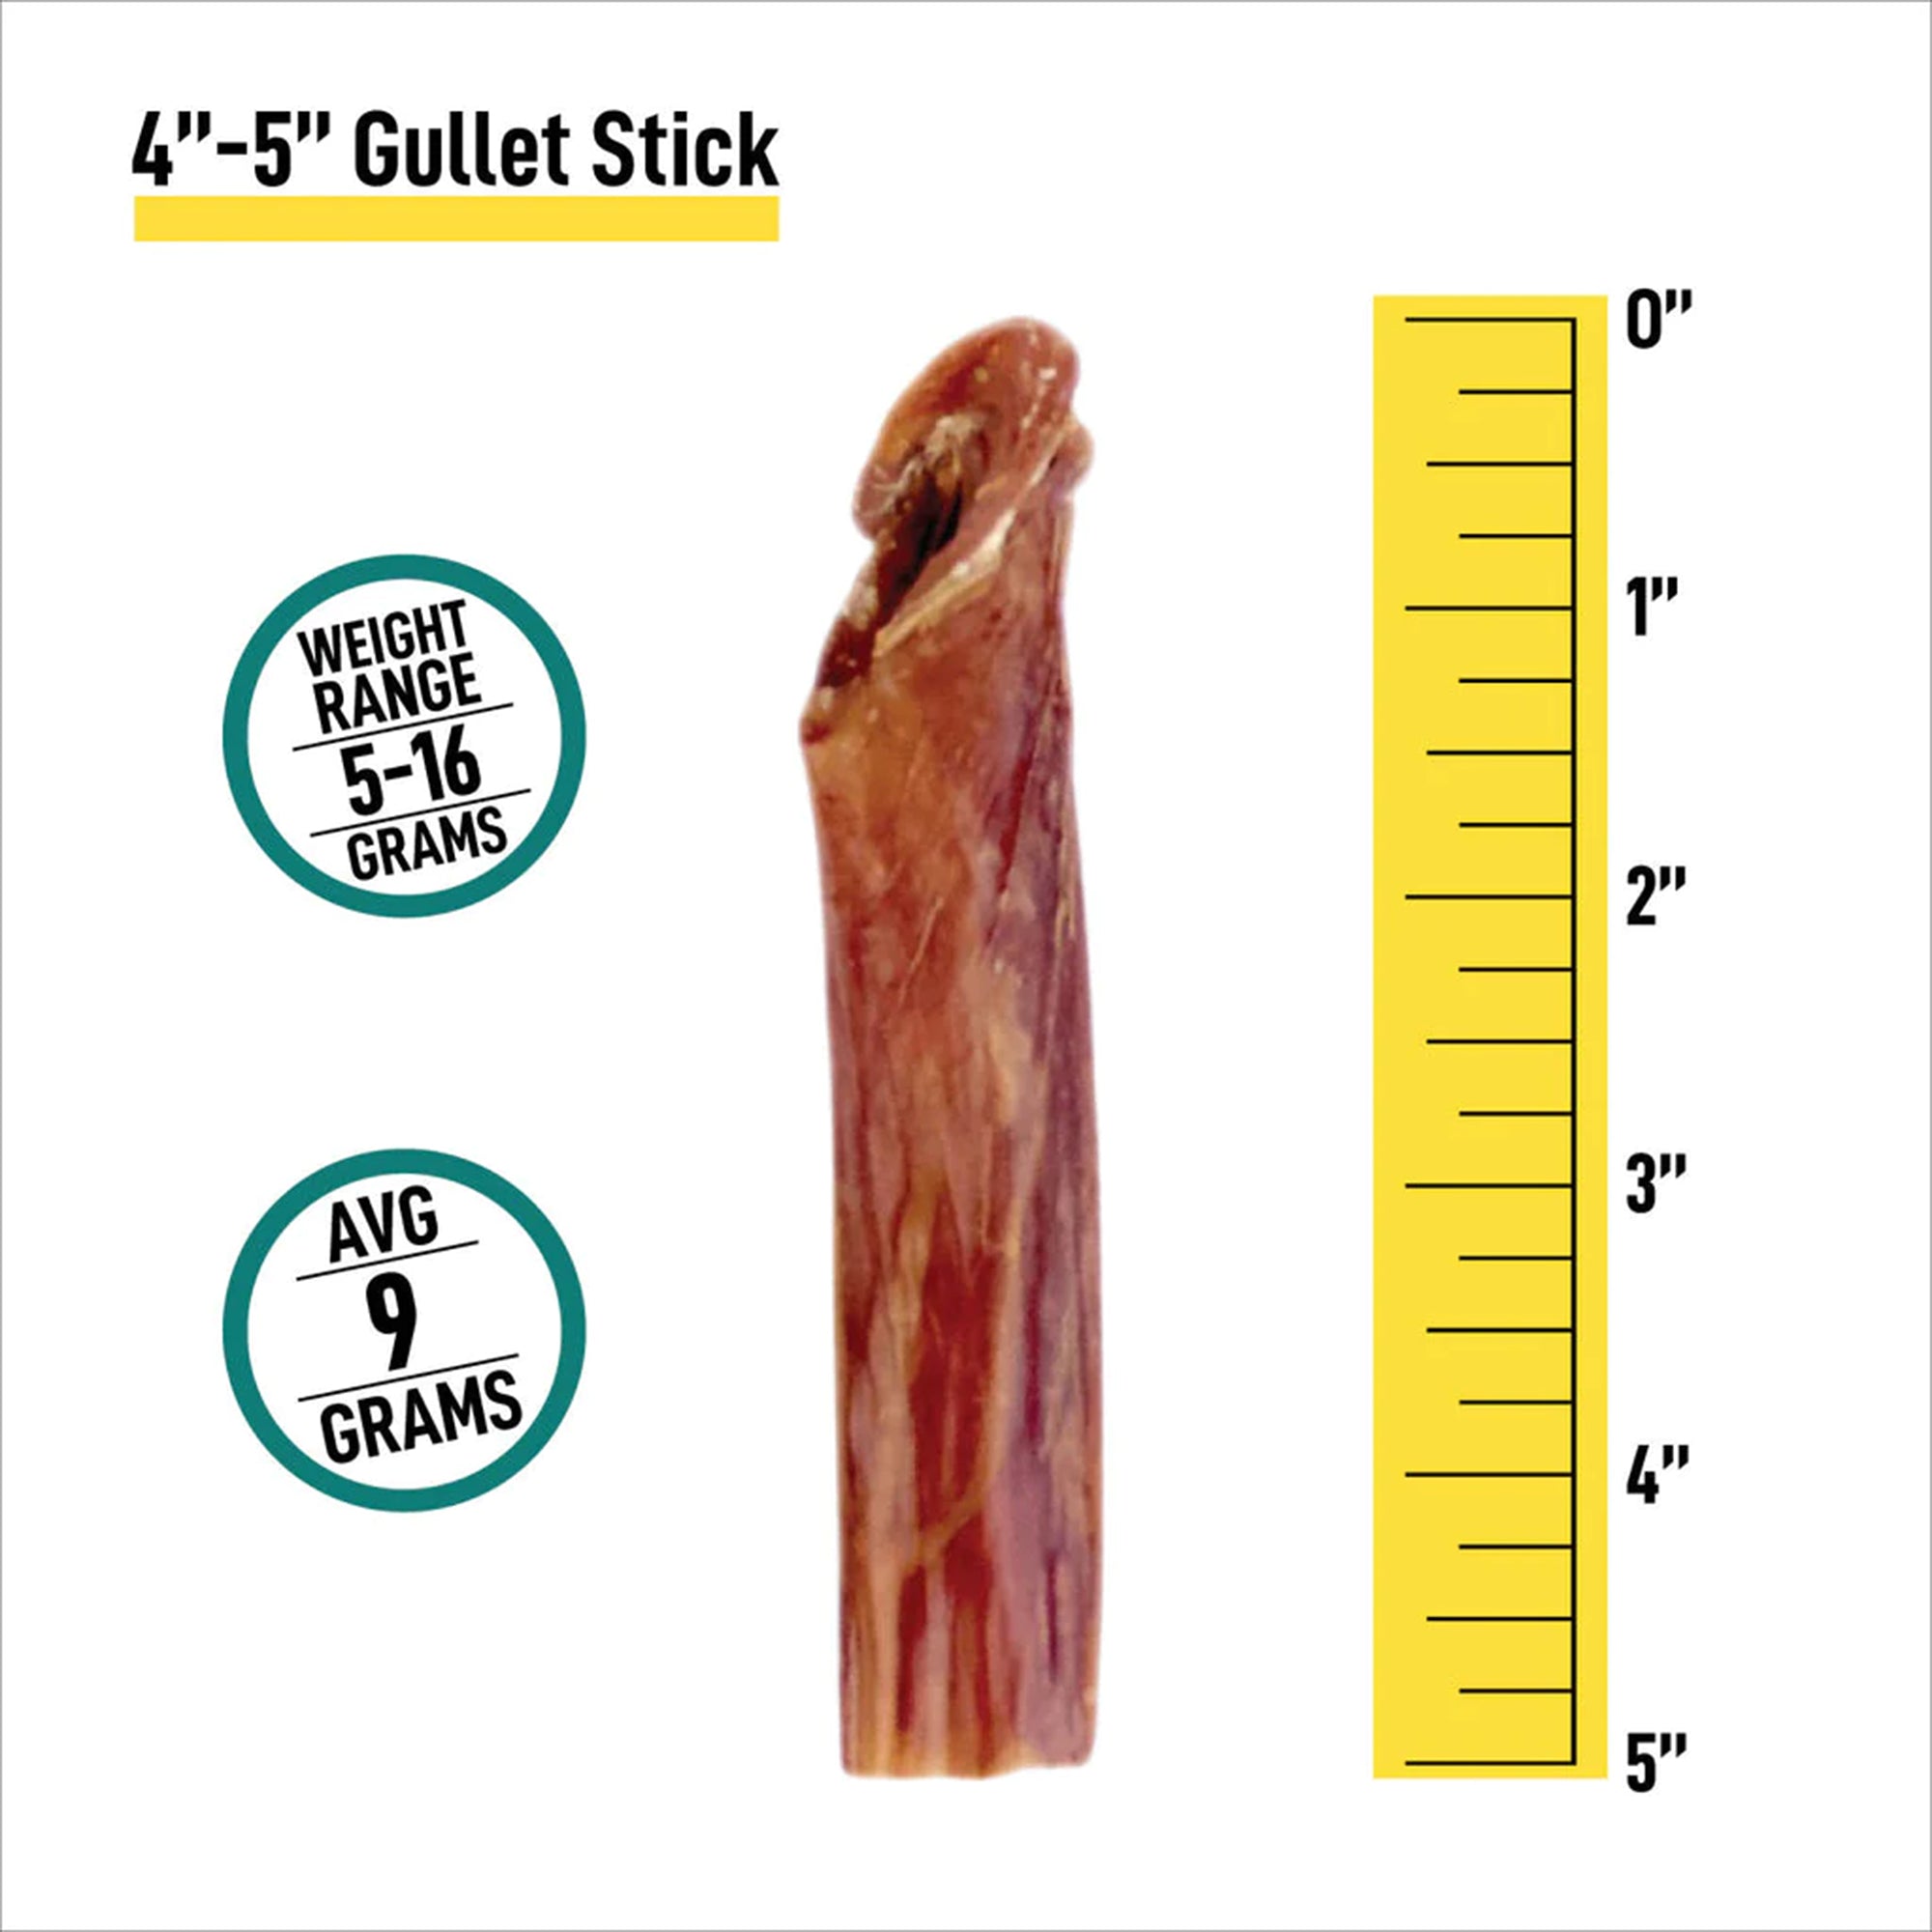 4-5” Gullet Sticks - 16oz Bag - K9warehouse.com